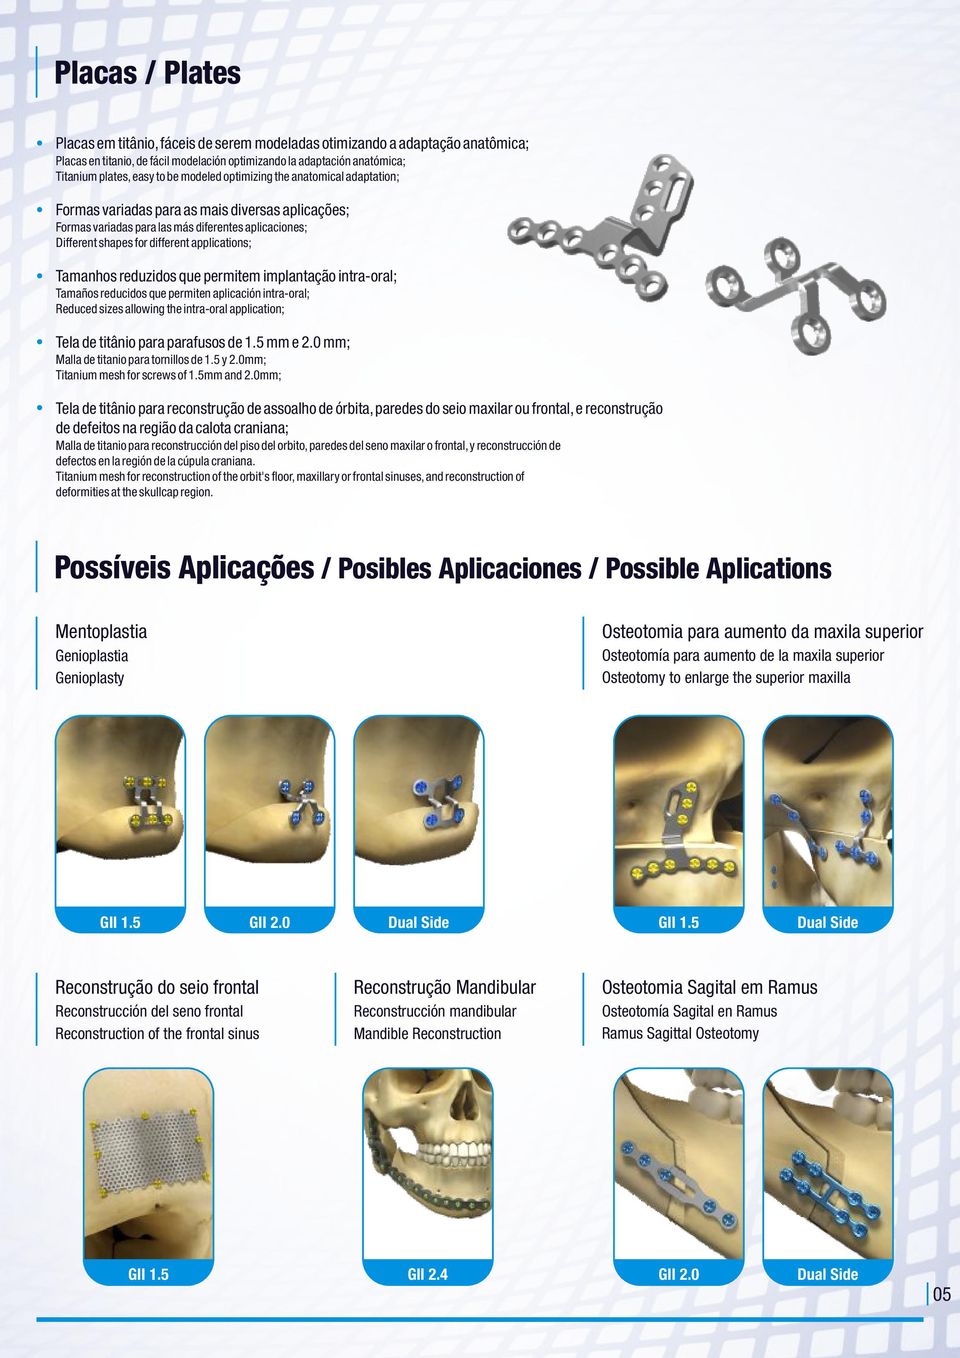 Tamanhos reduzidos que permitem implantação intra-oral; Tamaños reducidos que permiten aplicación intra-oral; Reduced sizes allowing the intra-oral application; Tela de titânio para parafusos de 1.